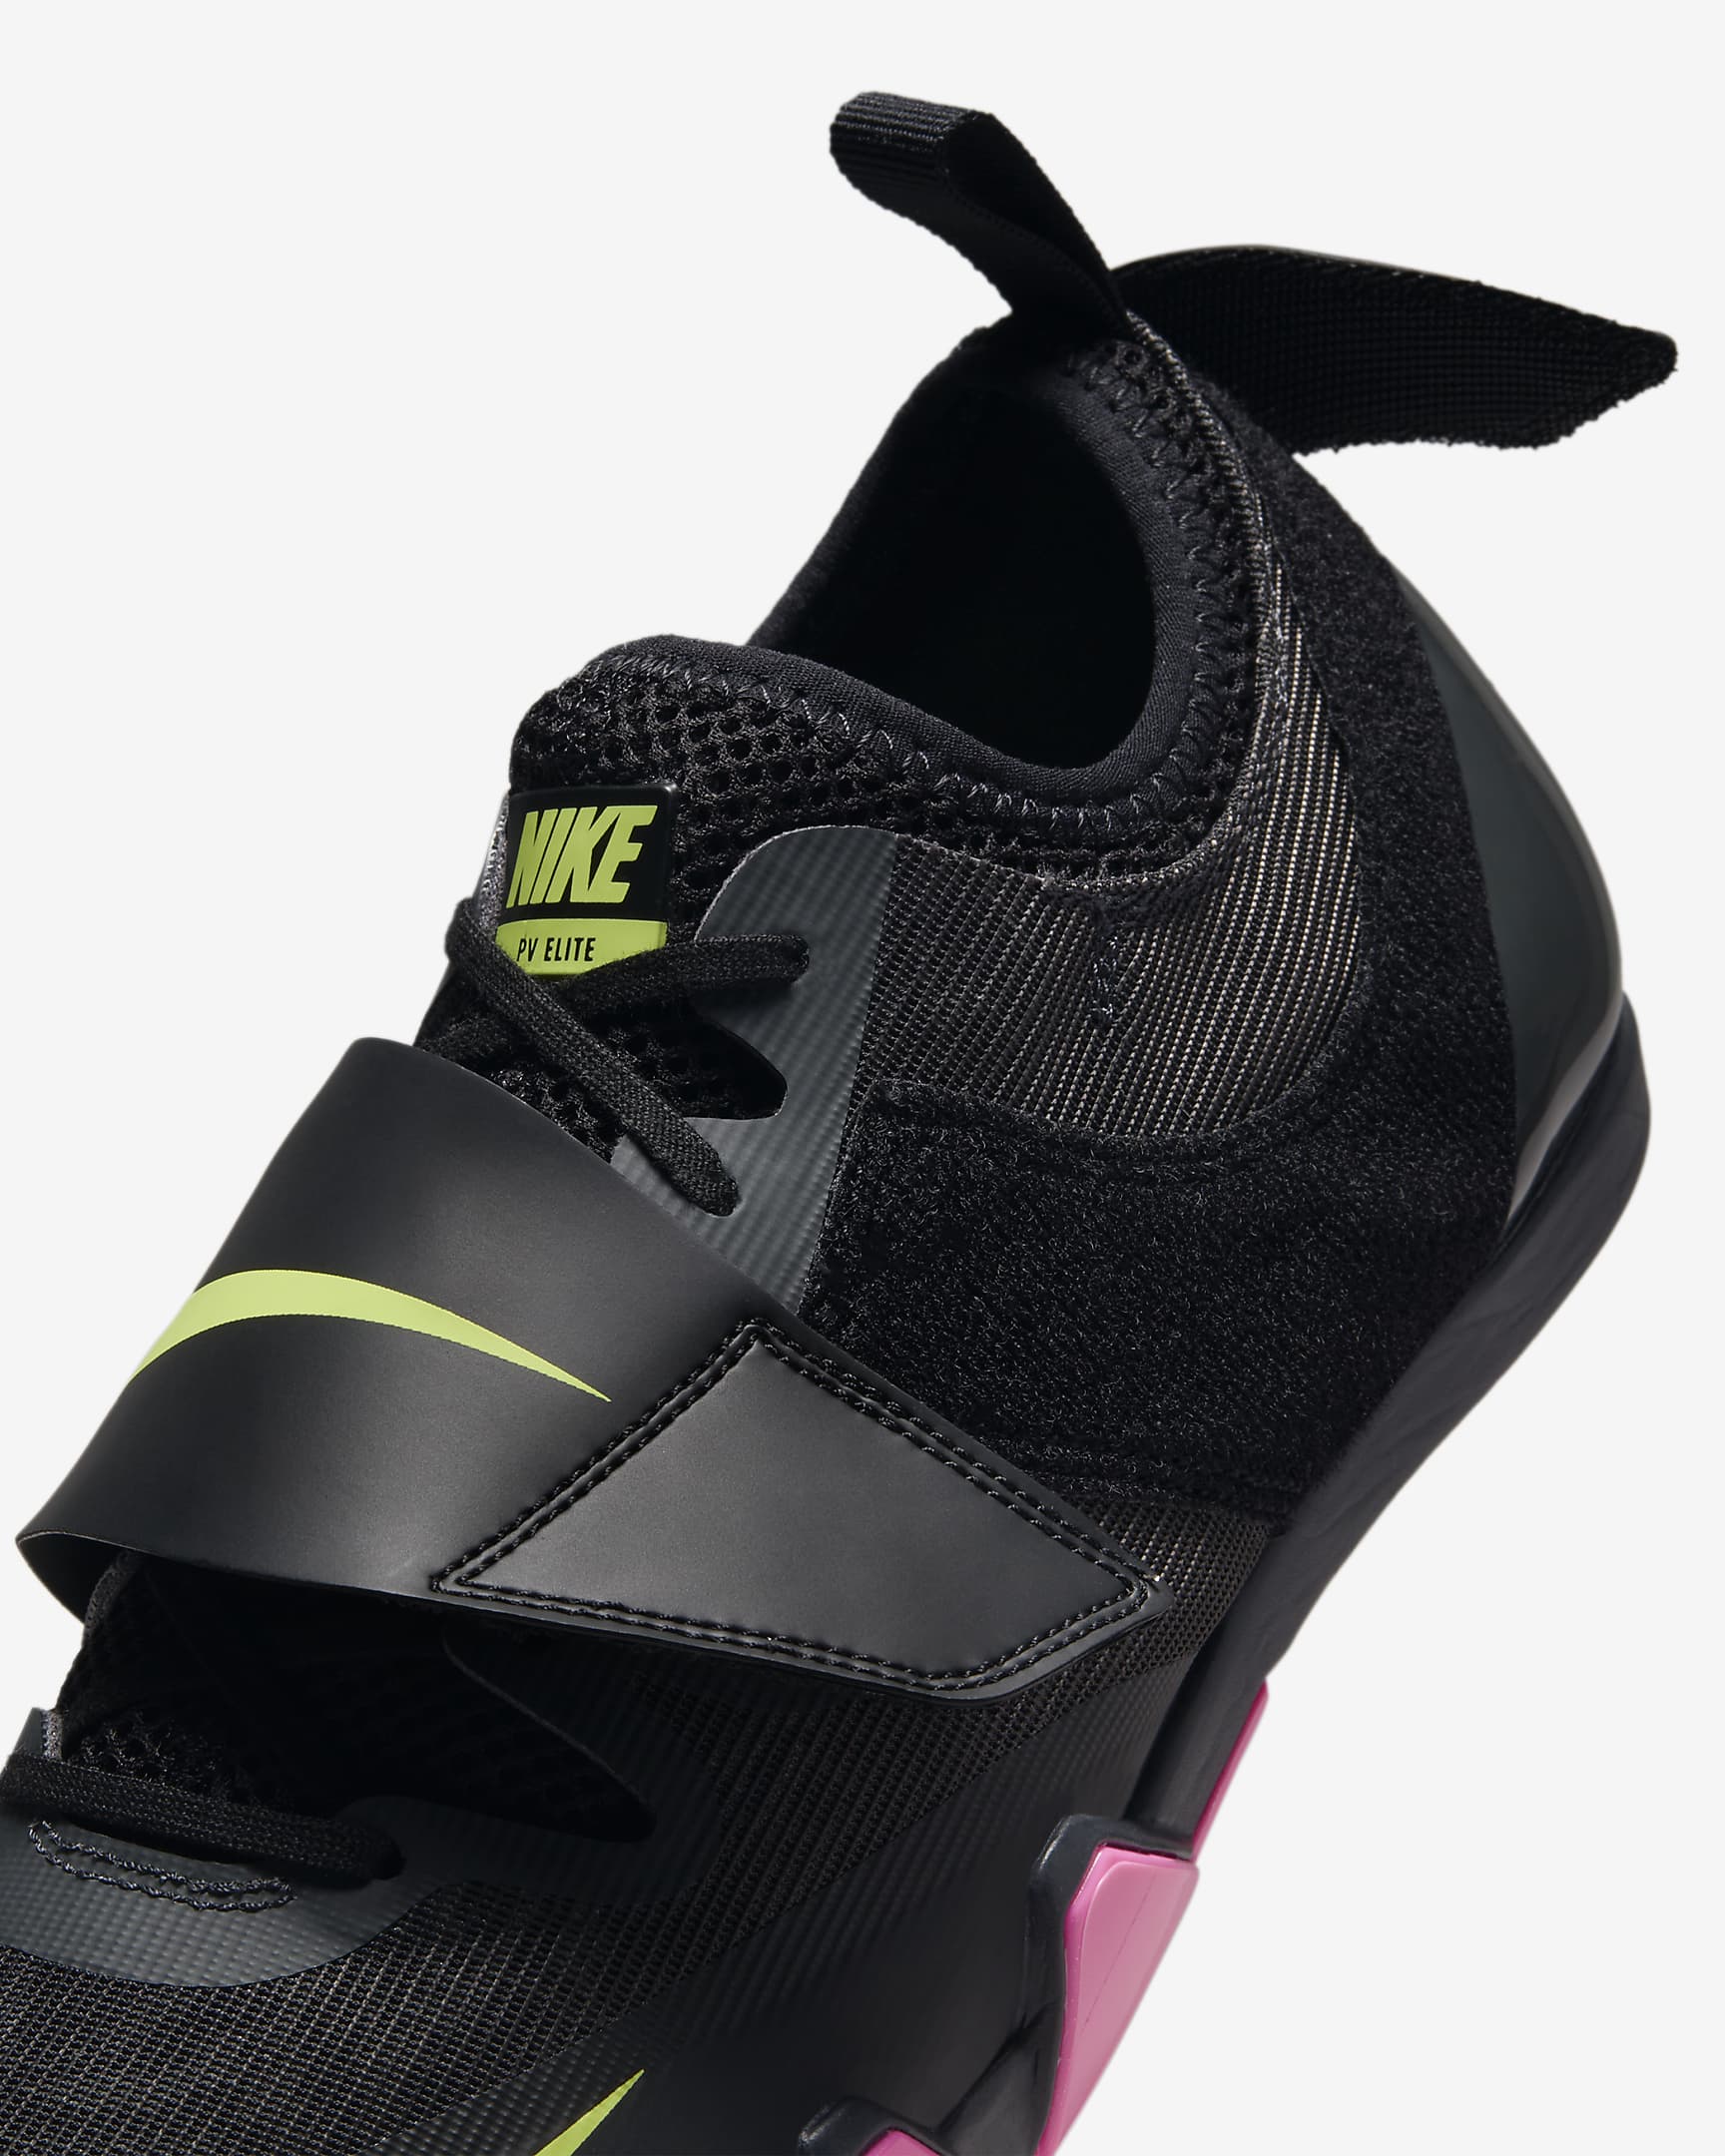 Nike Pole Vault Elite Athletics Jumping Spikes - Anthracite/Black/Light Lemon Twist/Fierce Pink